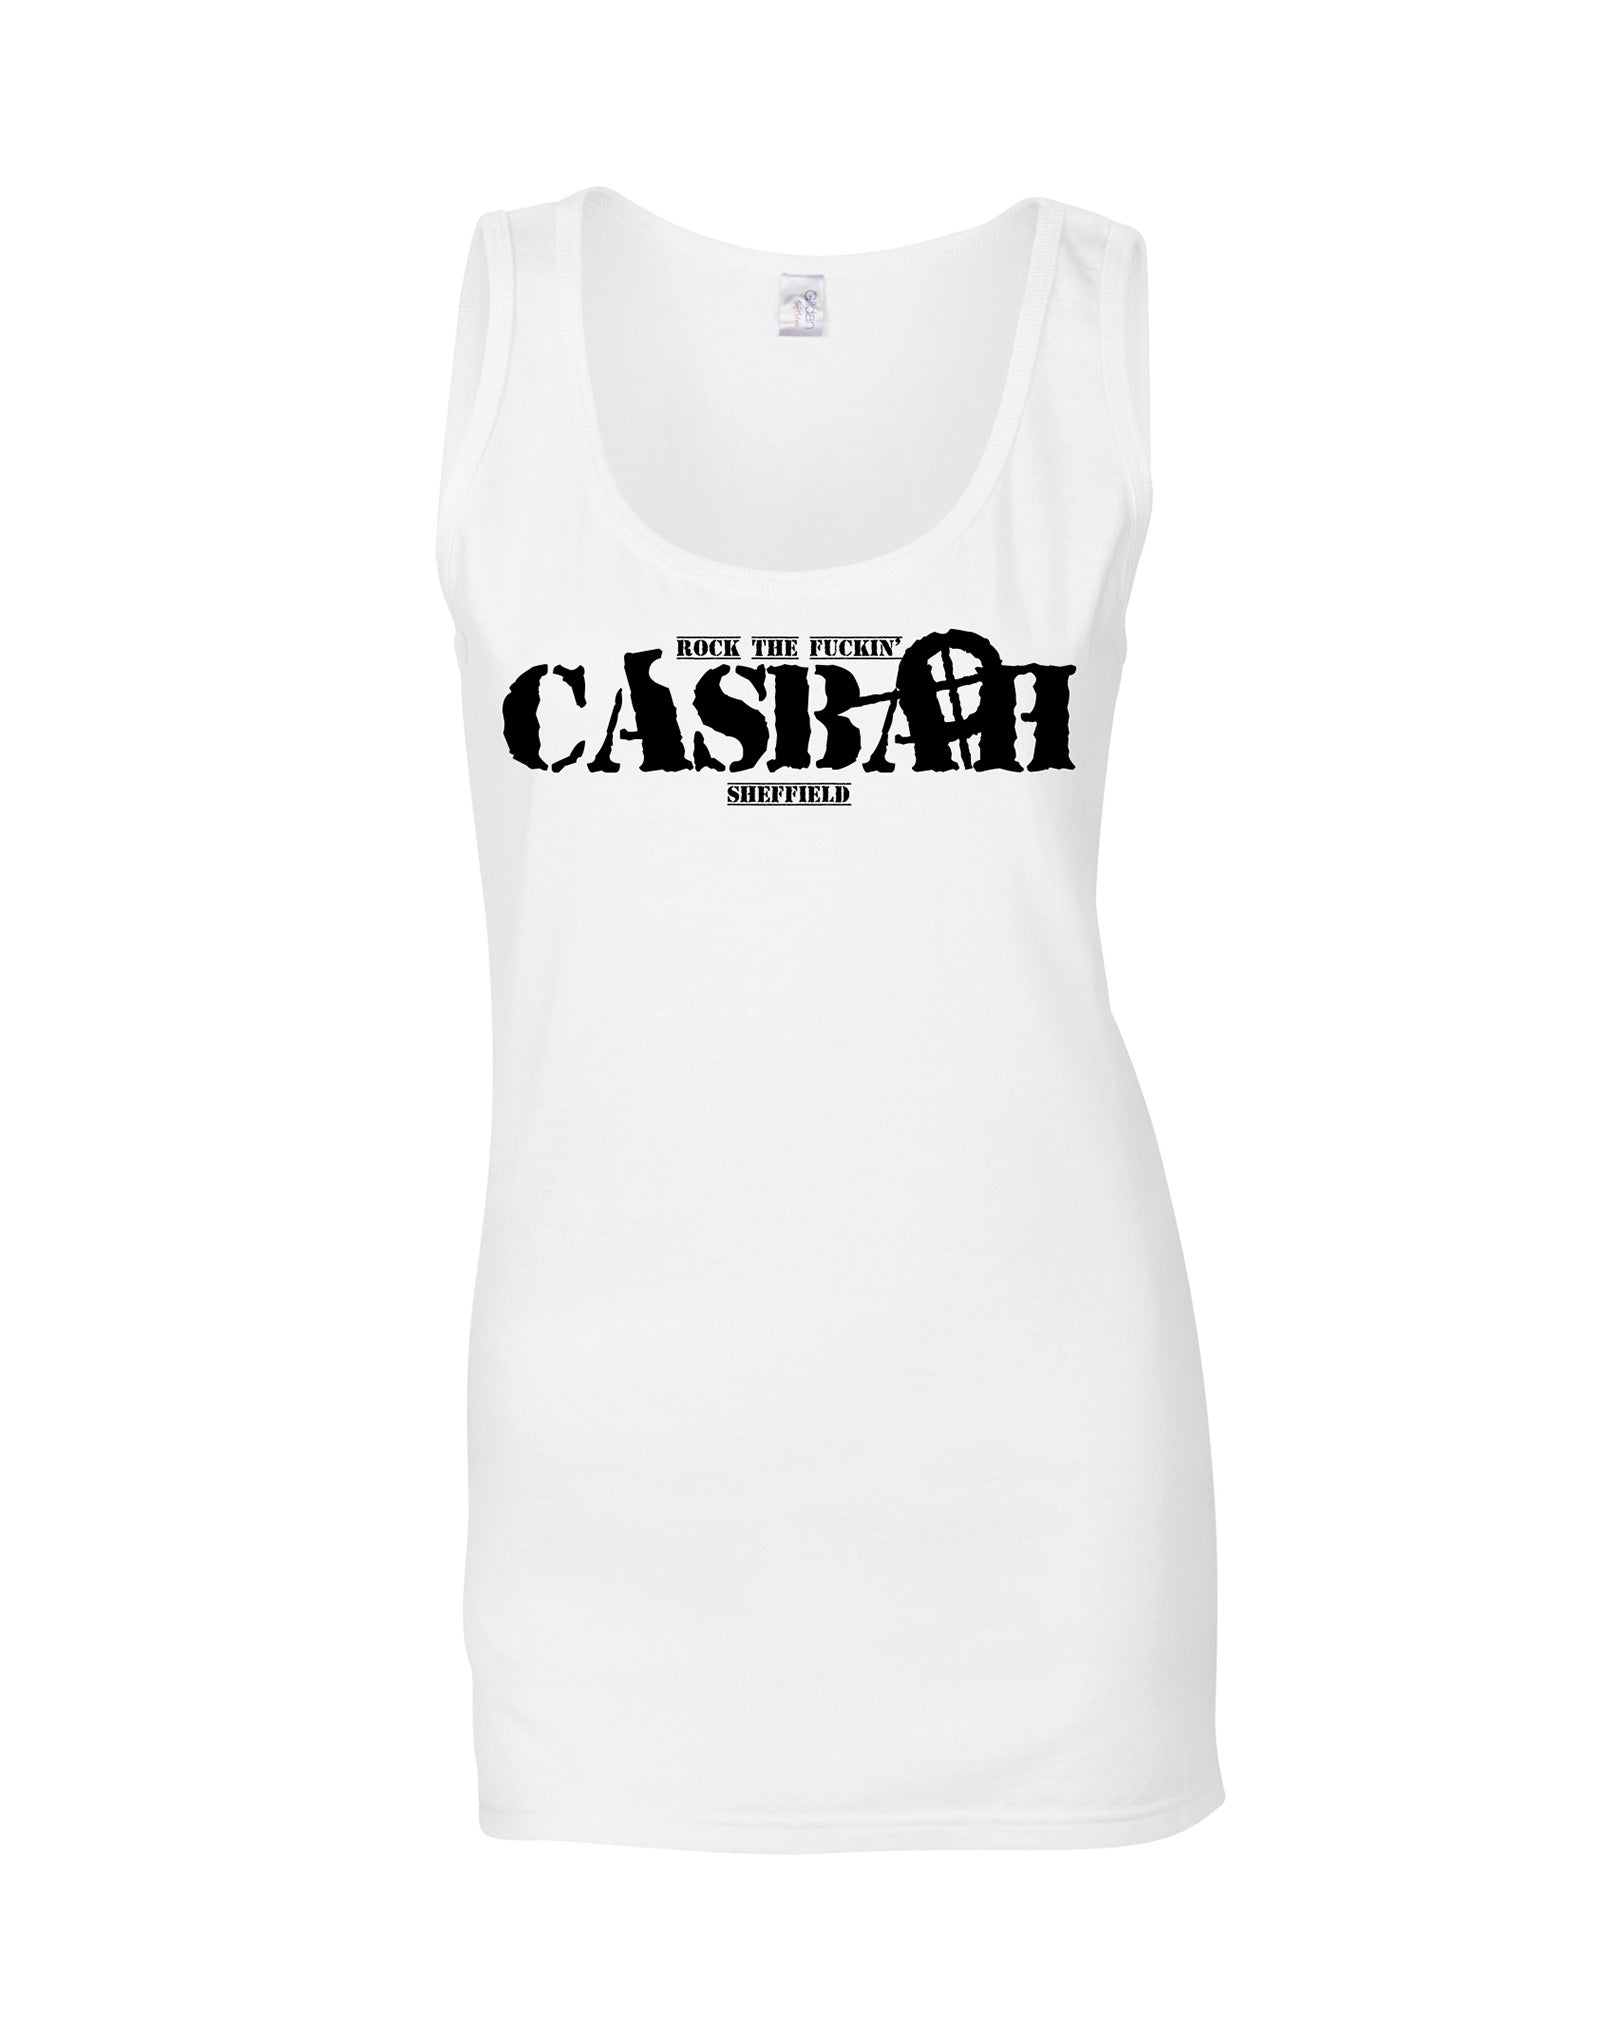 Casbah ladies fit vest - various colours - Dirty Stop Outs